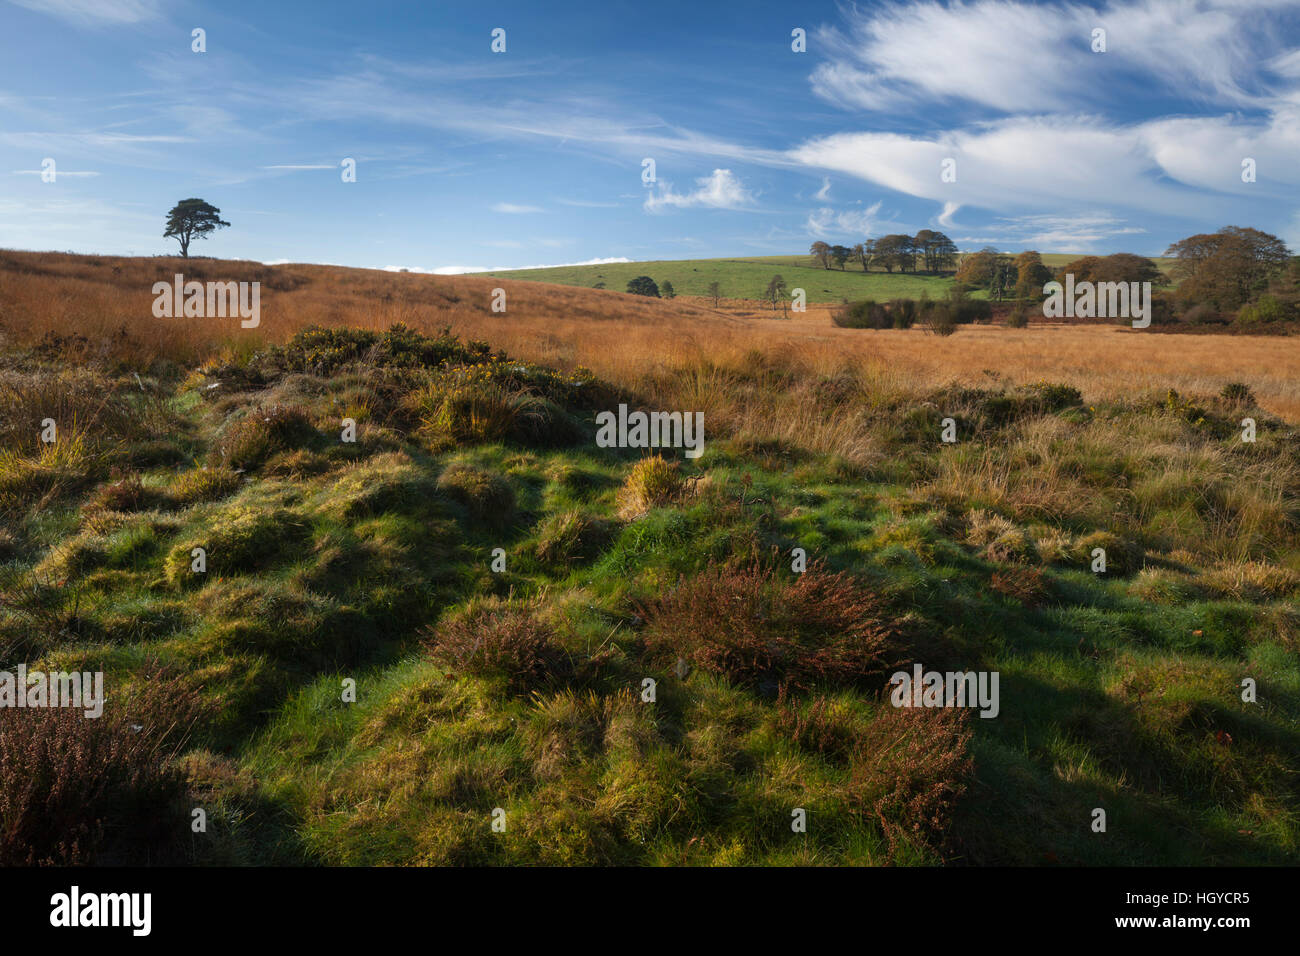 Herbstliche Landschaft Priddy Mineries Teppichboden in goldene Gräser und Klumpen von Heidekraut und Ginster, in der Nähe von Wells, Somerset, England Stockfoto